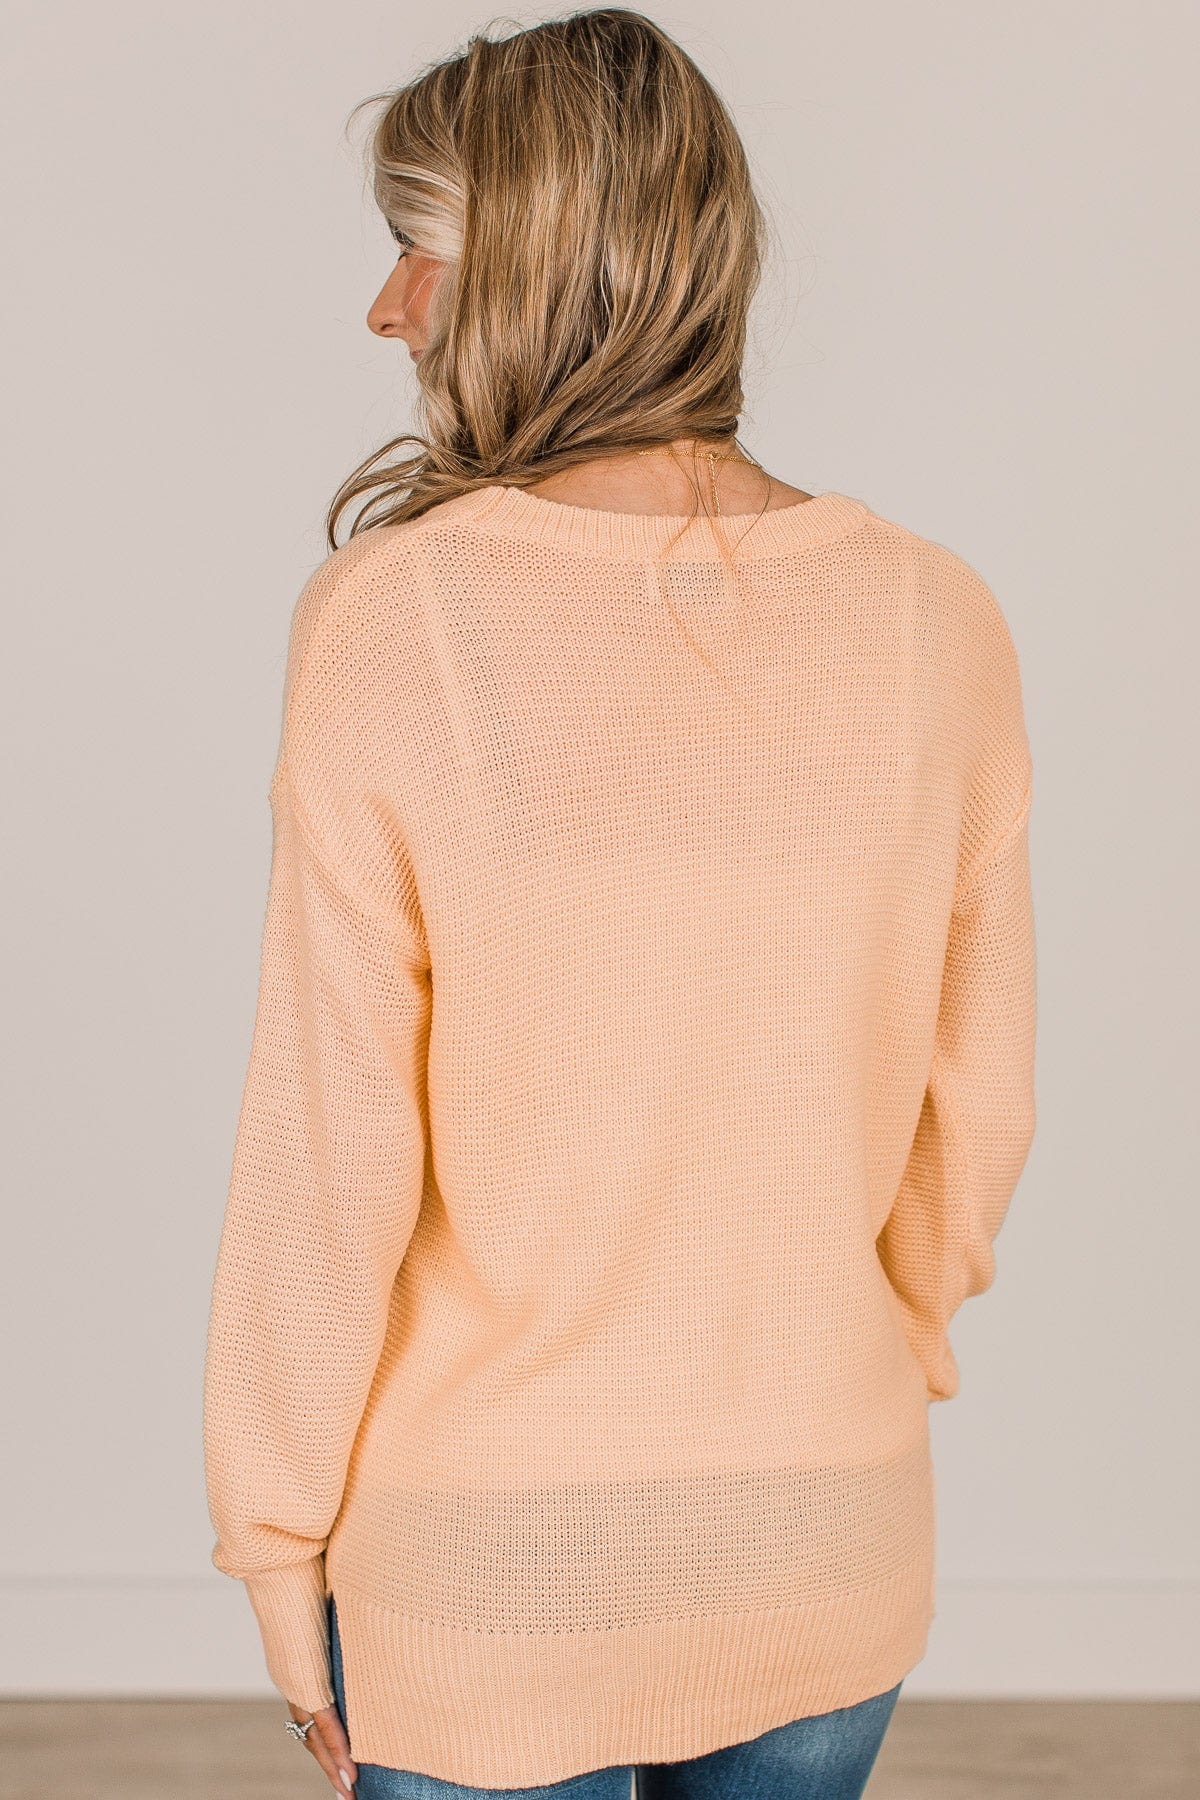 Be Fashionable Knit Sweater- Light Yellow